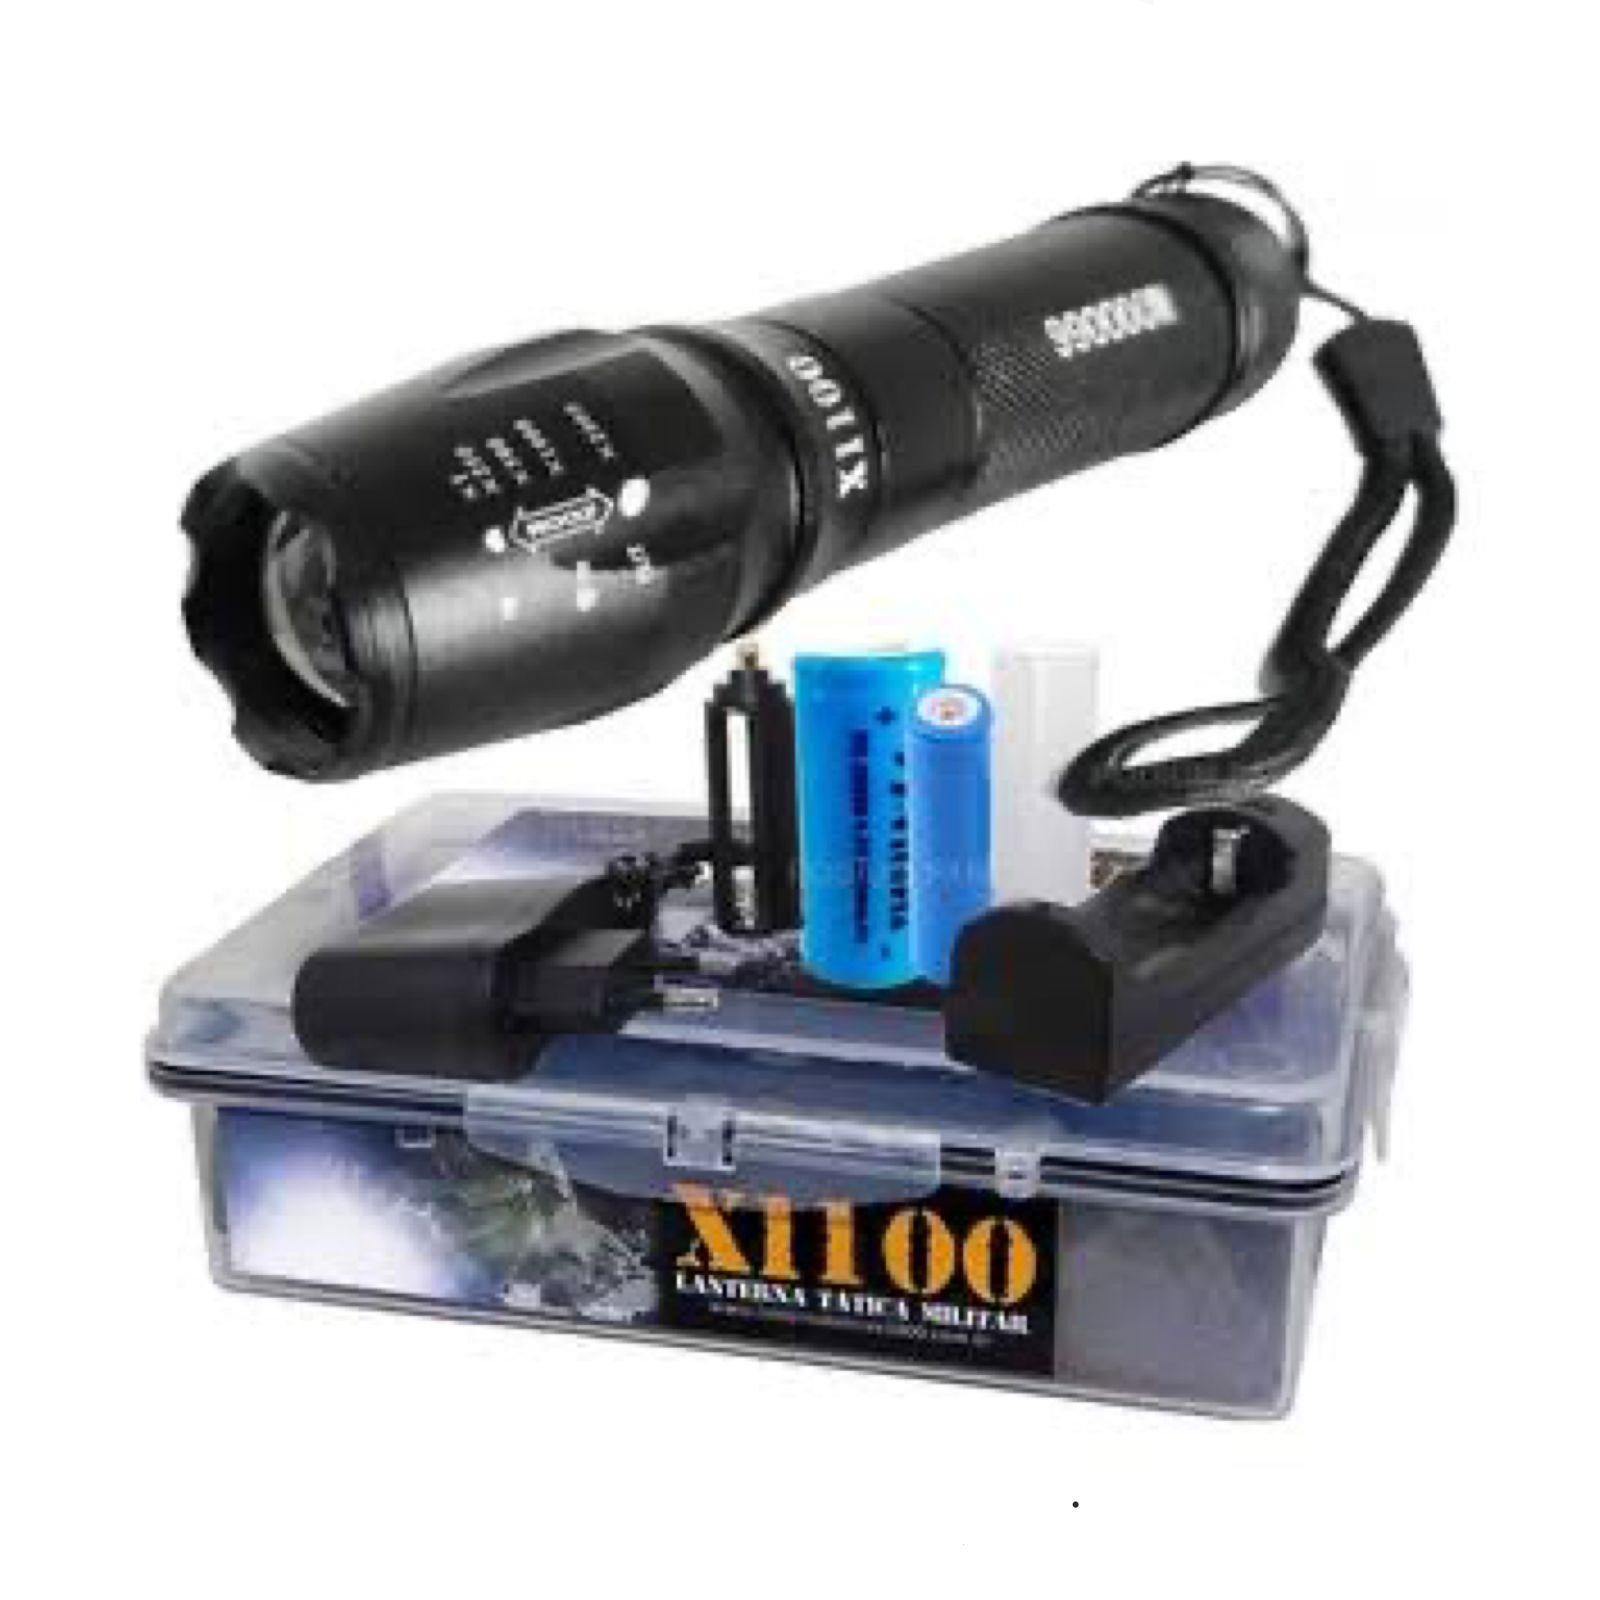 Lanterna Tática Militar Potente Recarregável X1100 - XML-T6 com Bateria de 100 horas